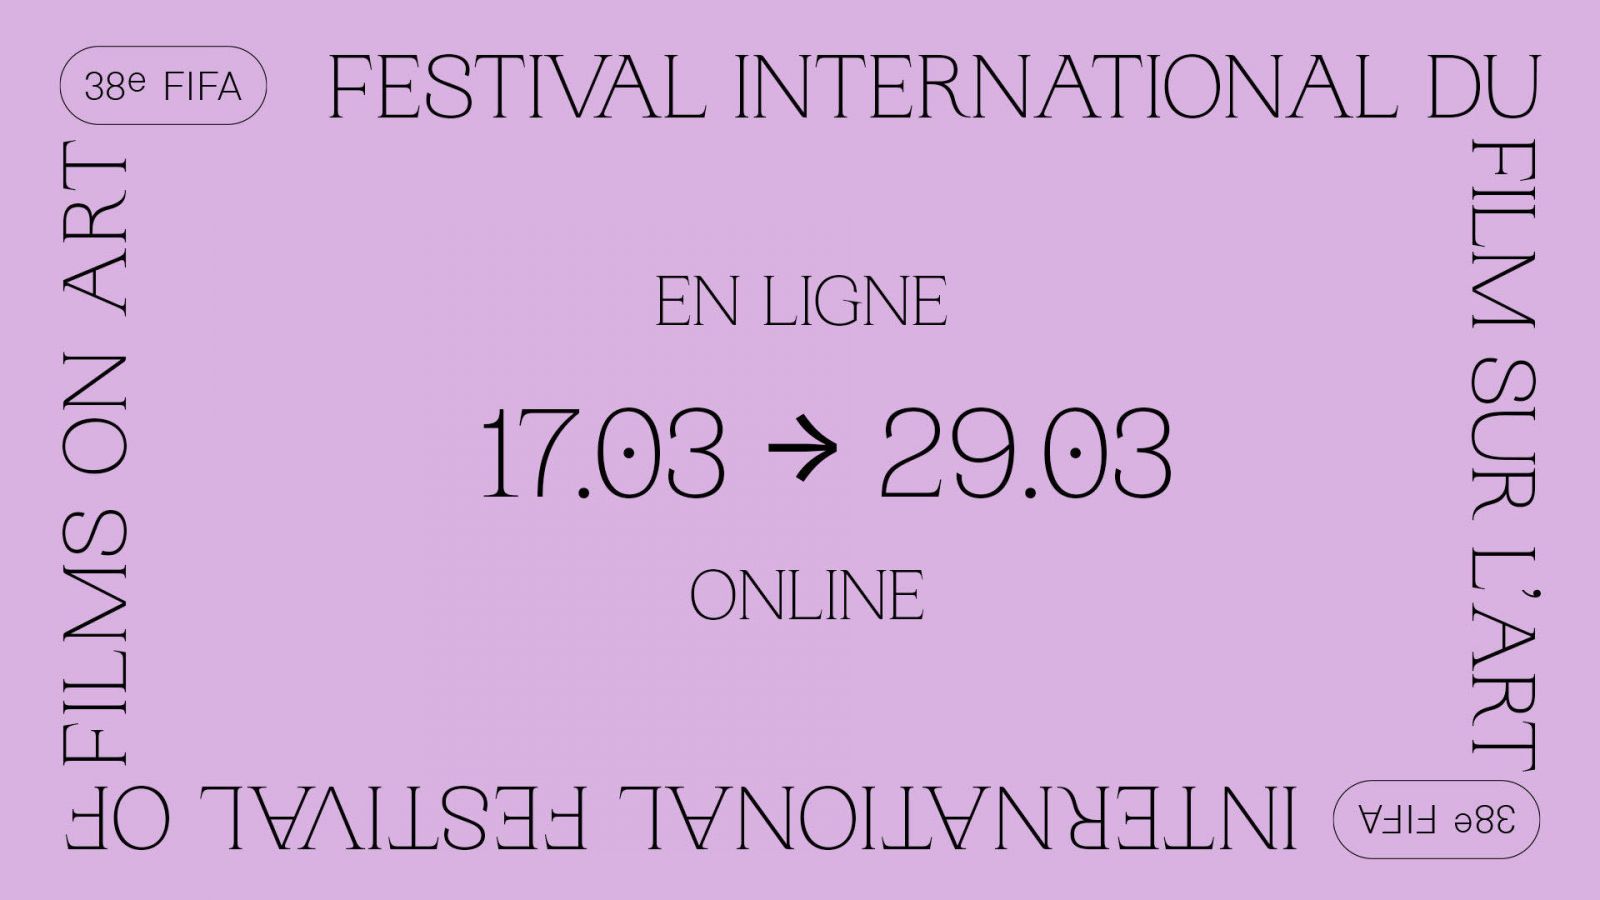 La 38e édition du Festival International du Film sur l’Art en ligne dès le 17 mars 2020 !